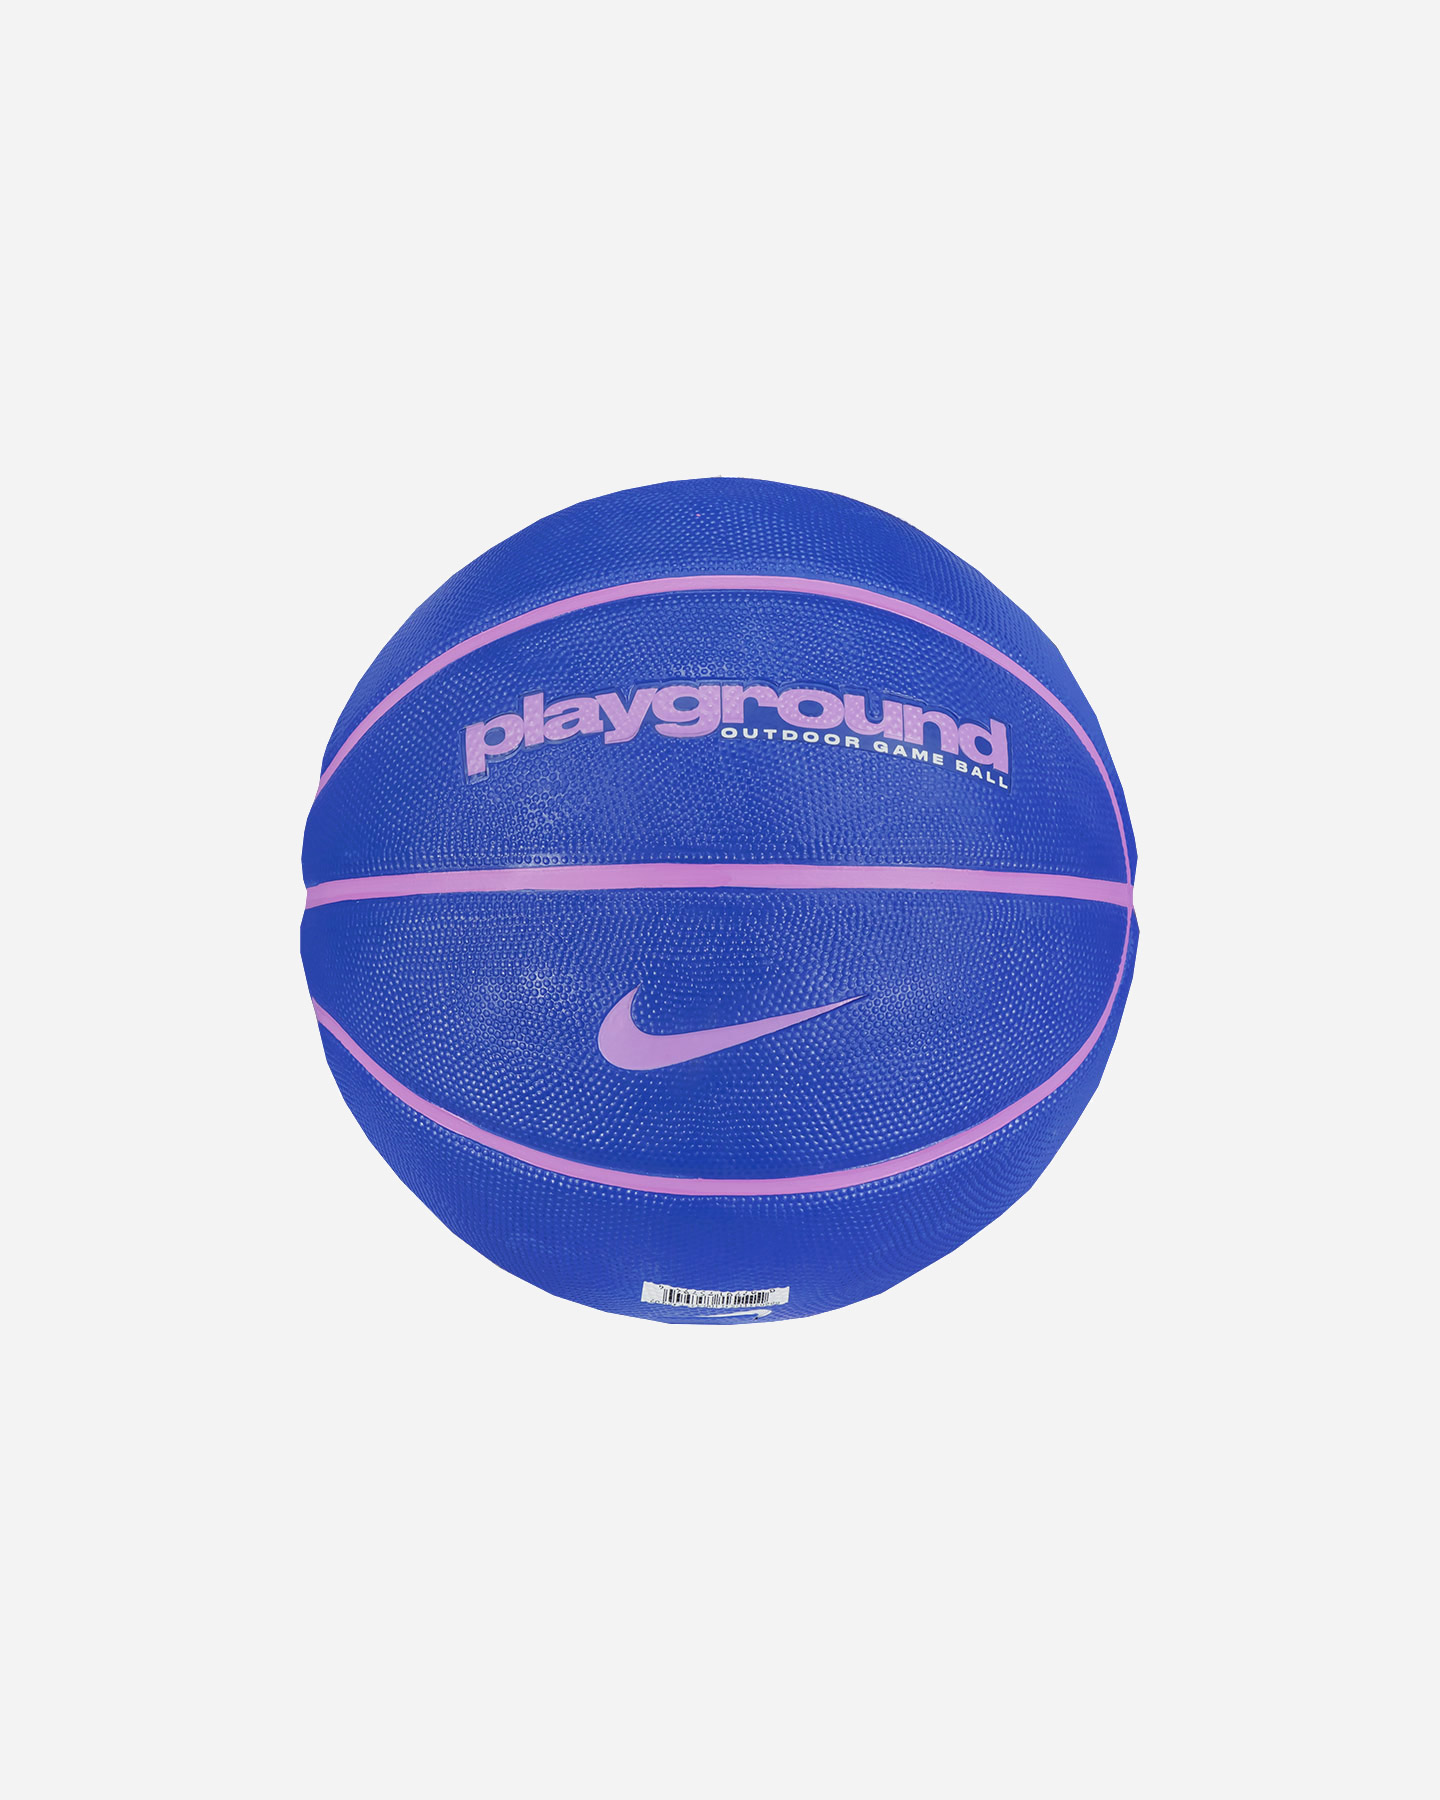 Image of Nike Everyday Playground 07 - Pallone Basket